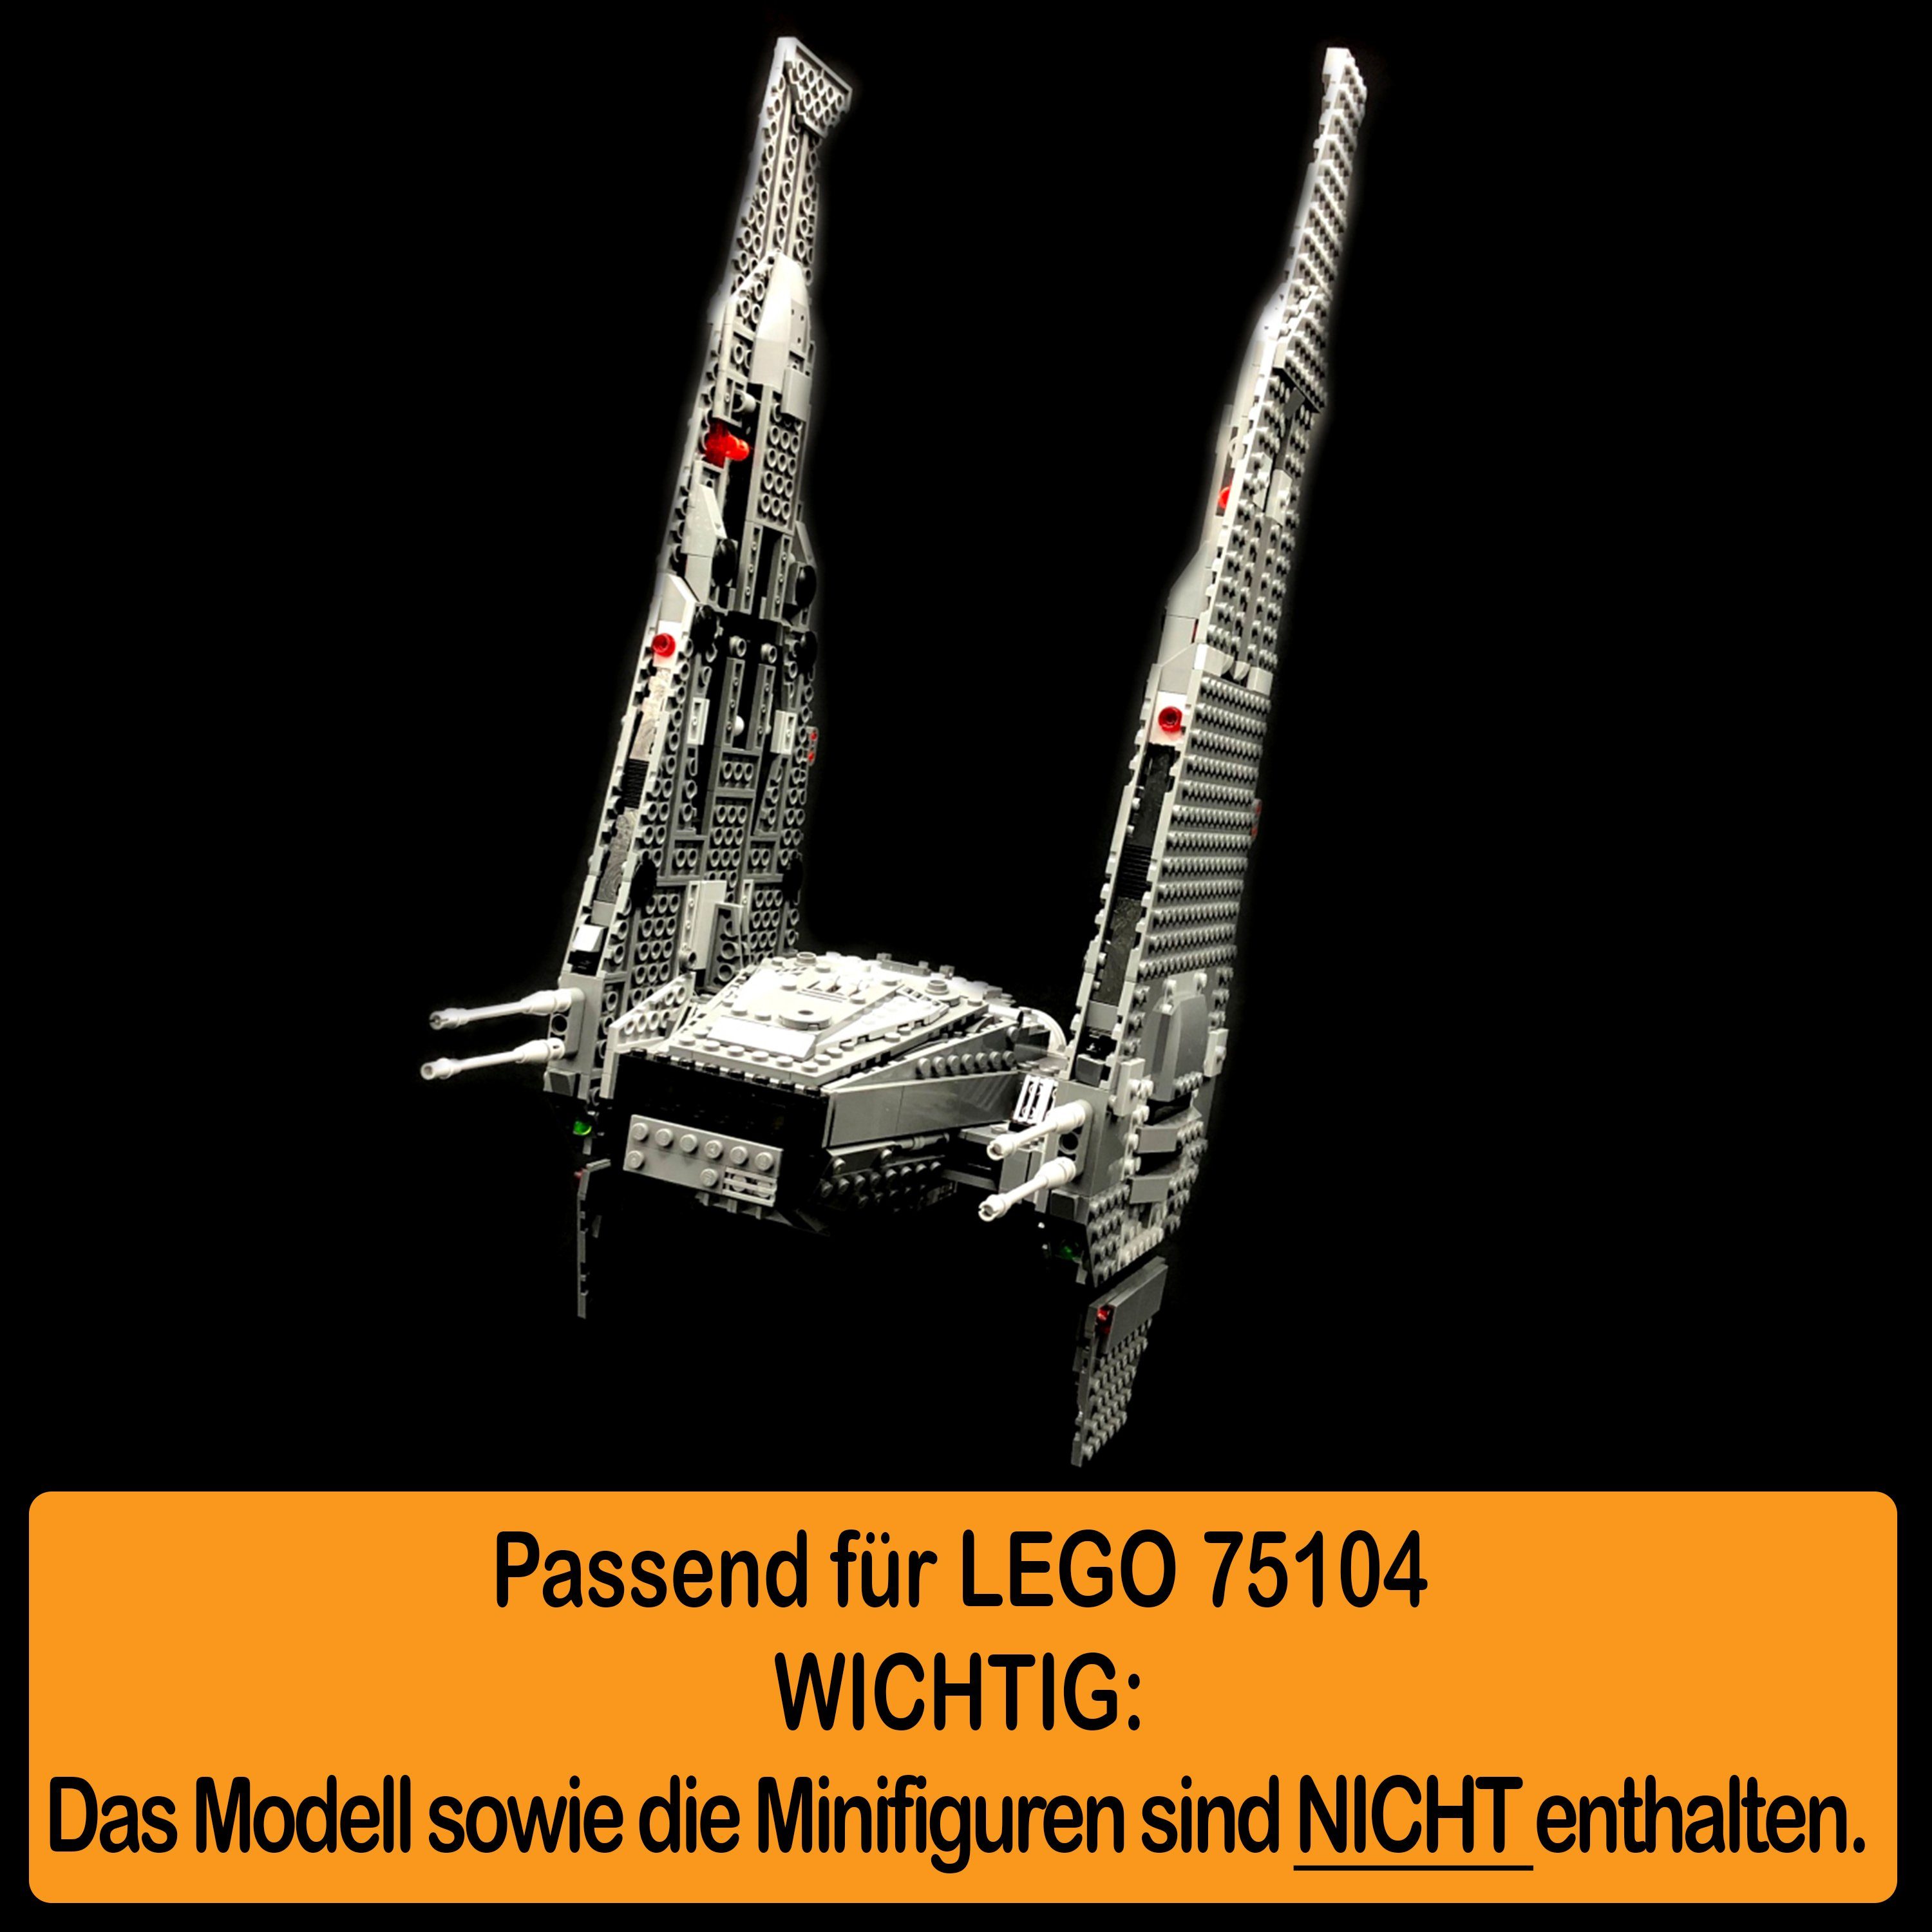 AREA17 Standfuß Acryl Display in (verschiedene einstellbar, Ren´s 100% zum Positionen zusammenbauen), Command Germany und Winkel 75104 Made Stand Shuttle LEGO selbst für Kylo